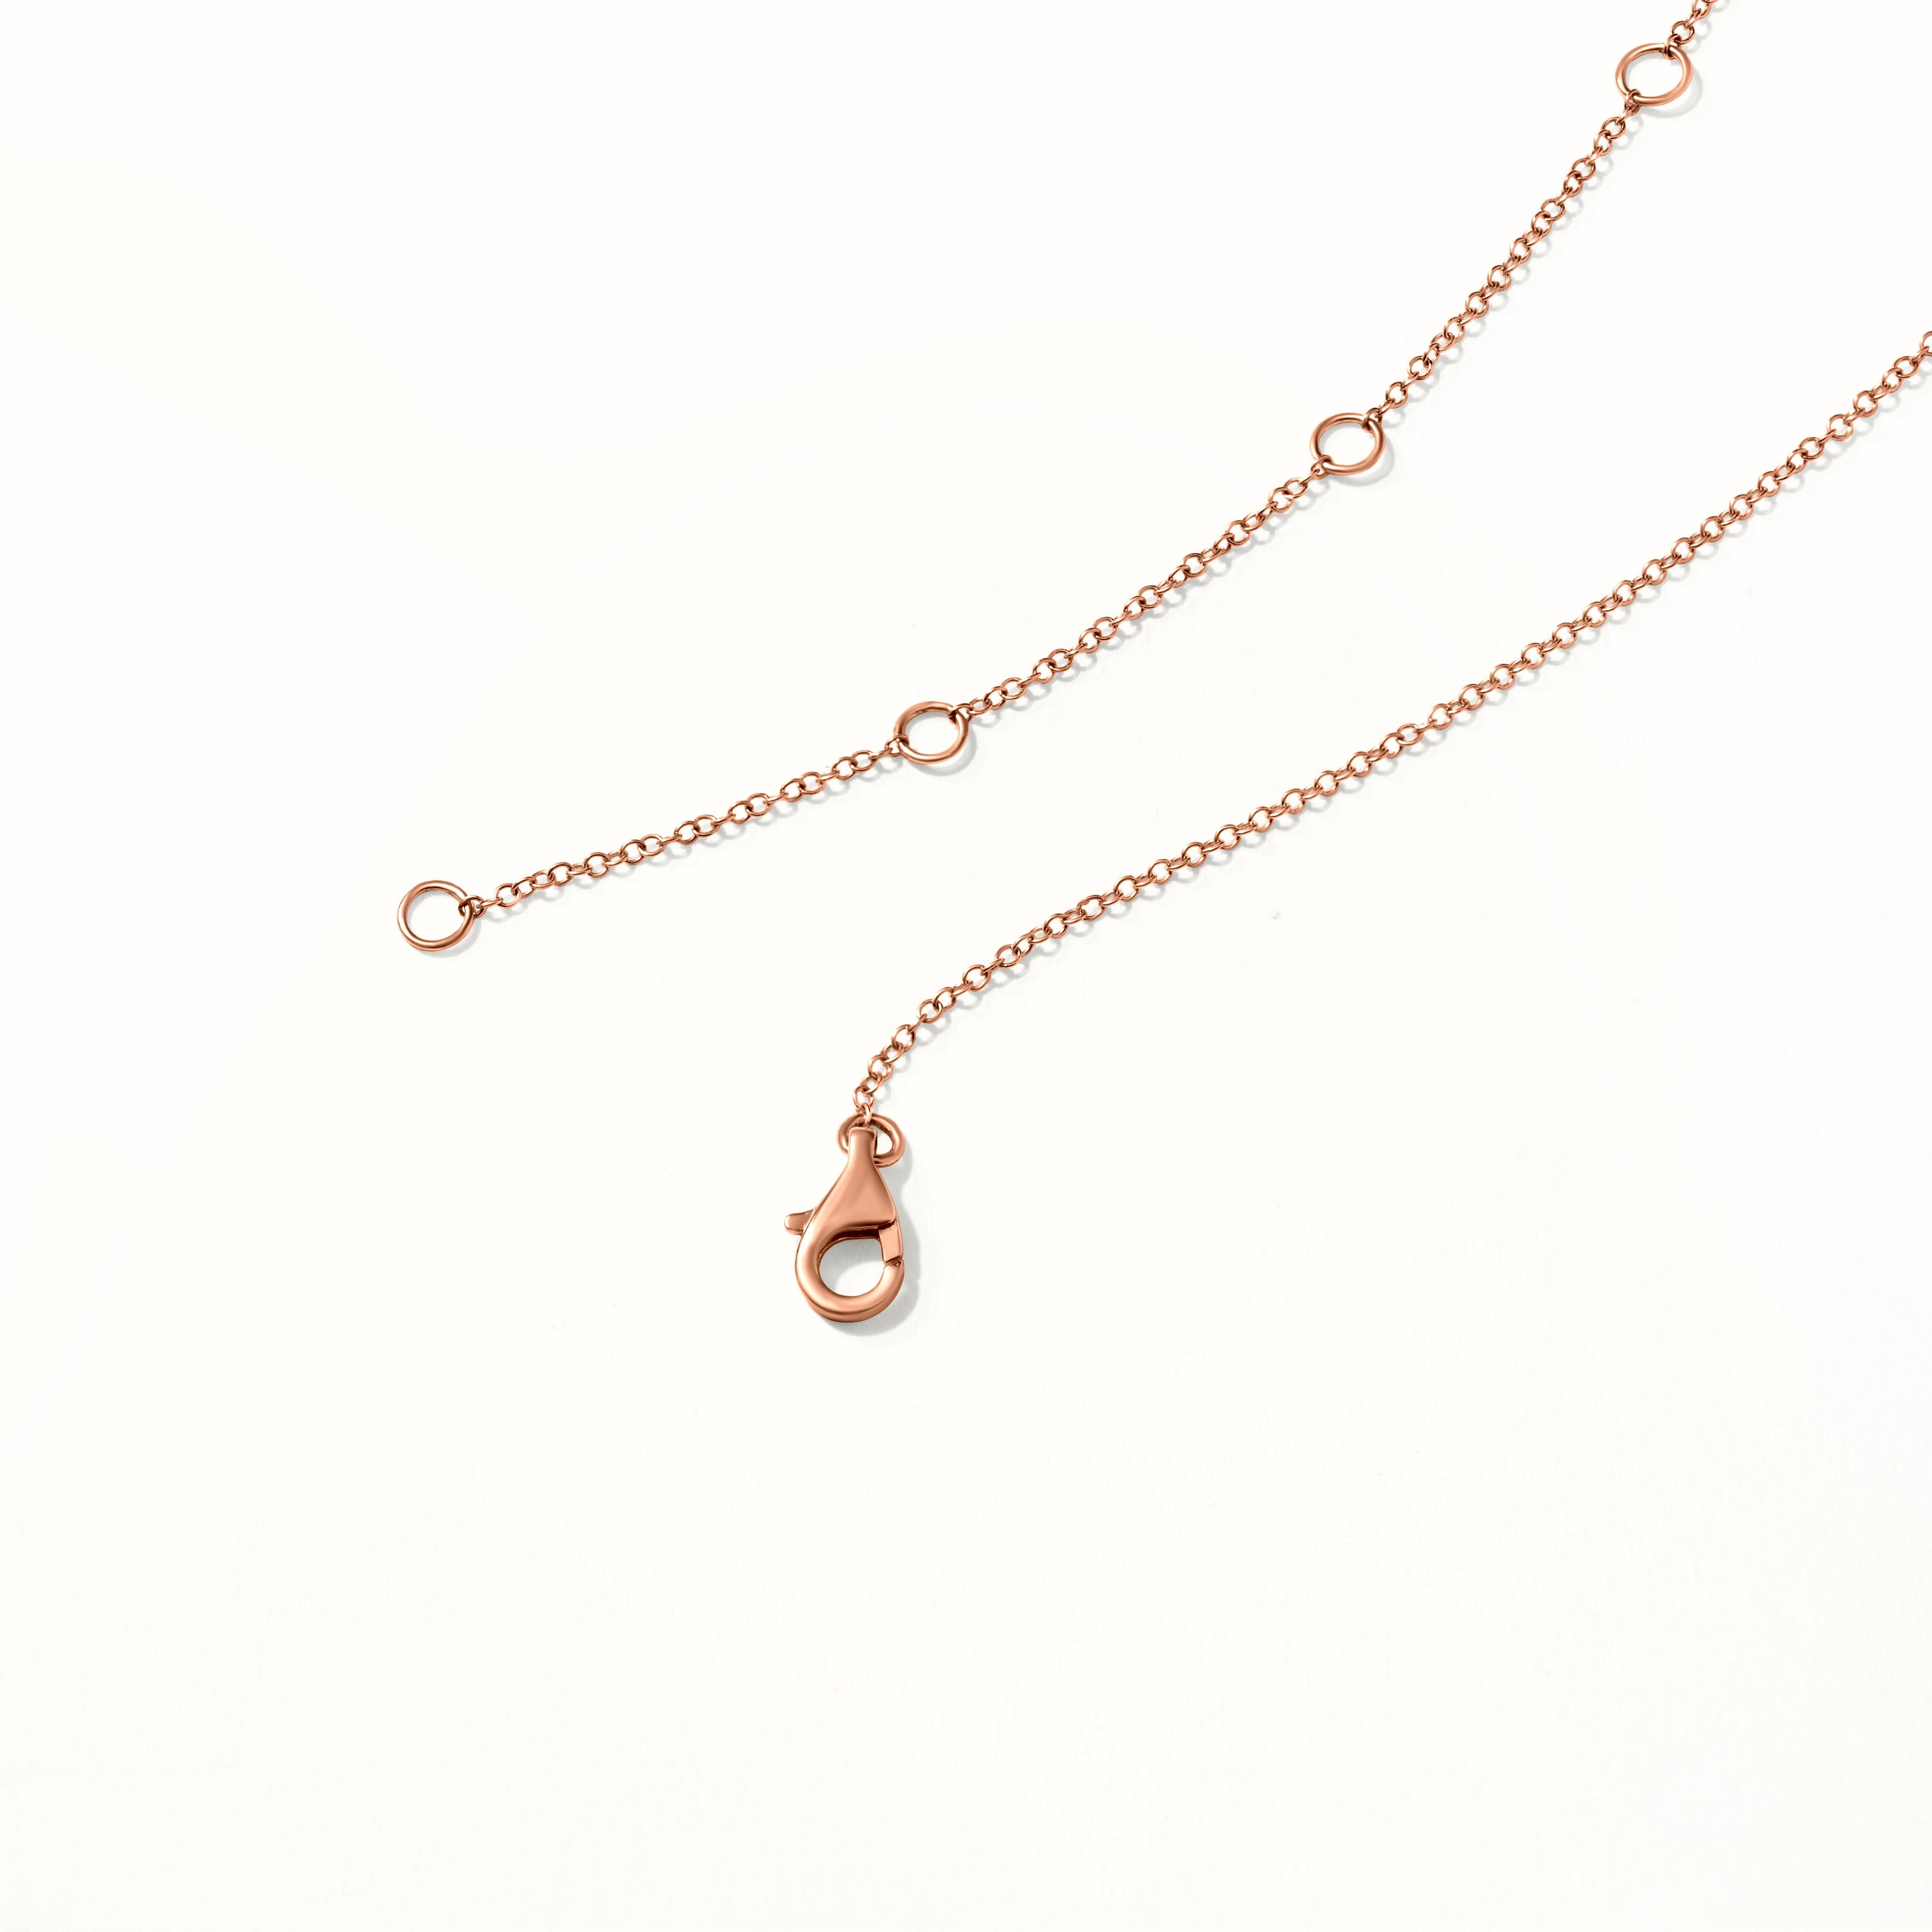 Luxle 0.24 Carat Diamond Pendant Necklace in 18k Rose Gold 1